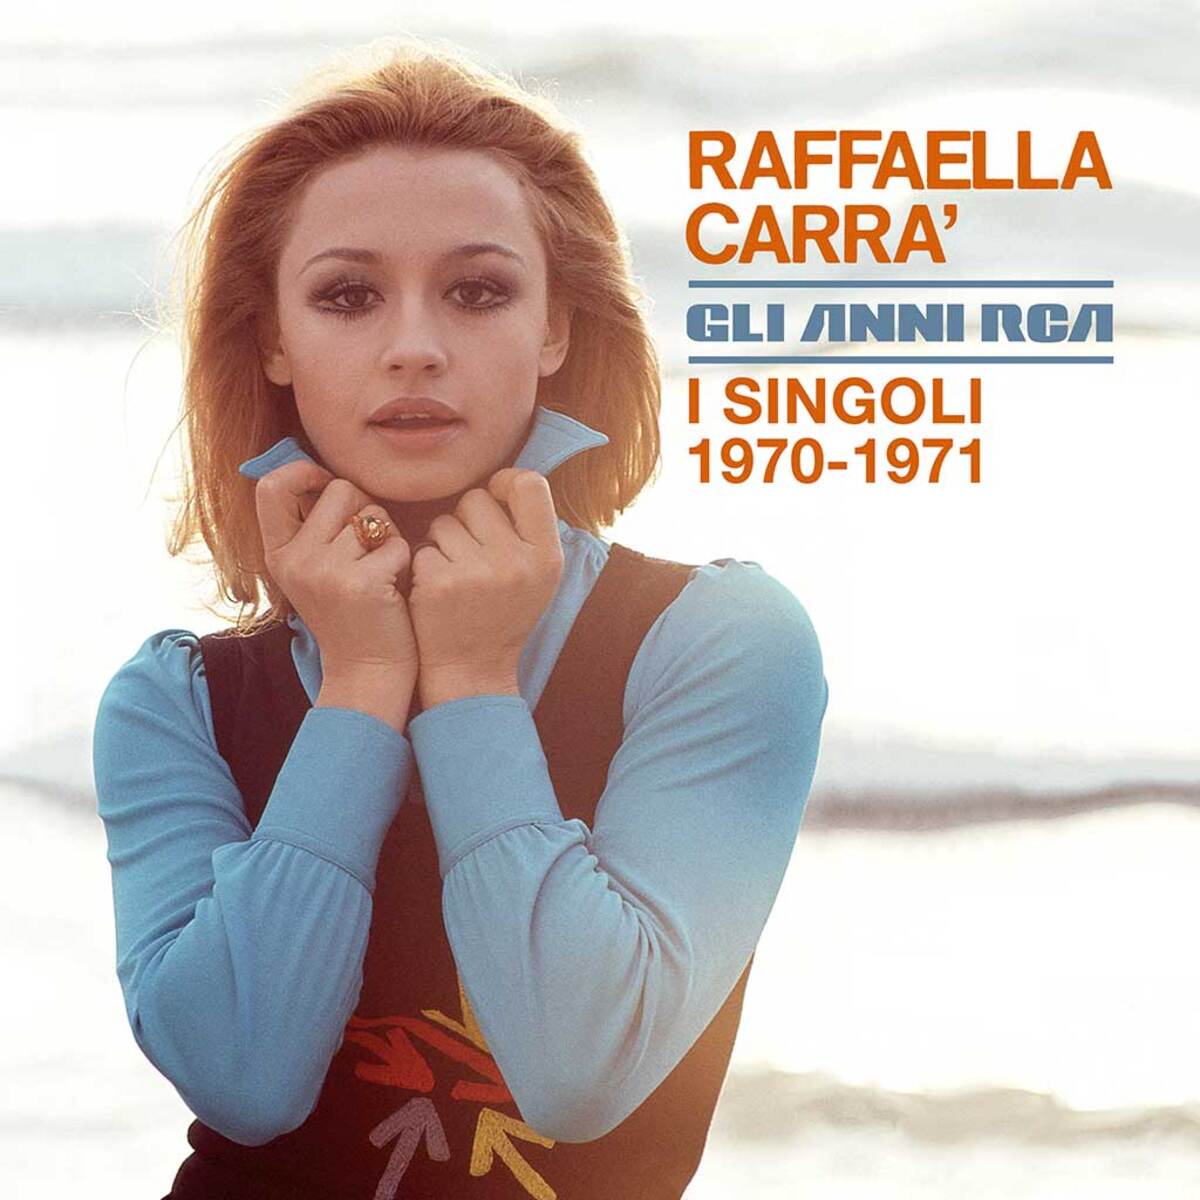 Raffaella Carrà gli anni RCA i singoli 1970 1971 cover